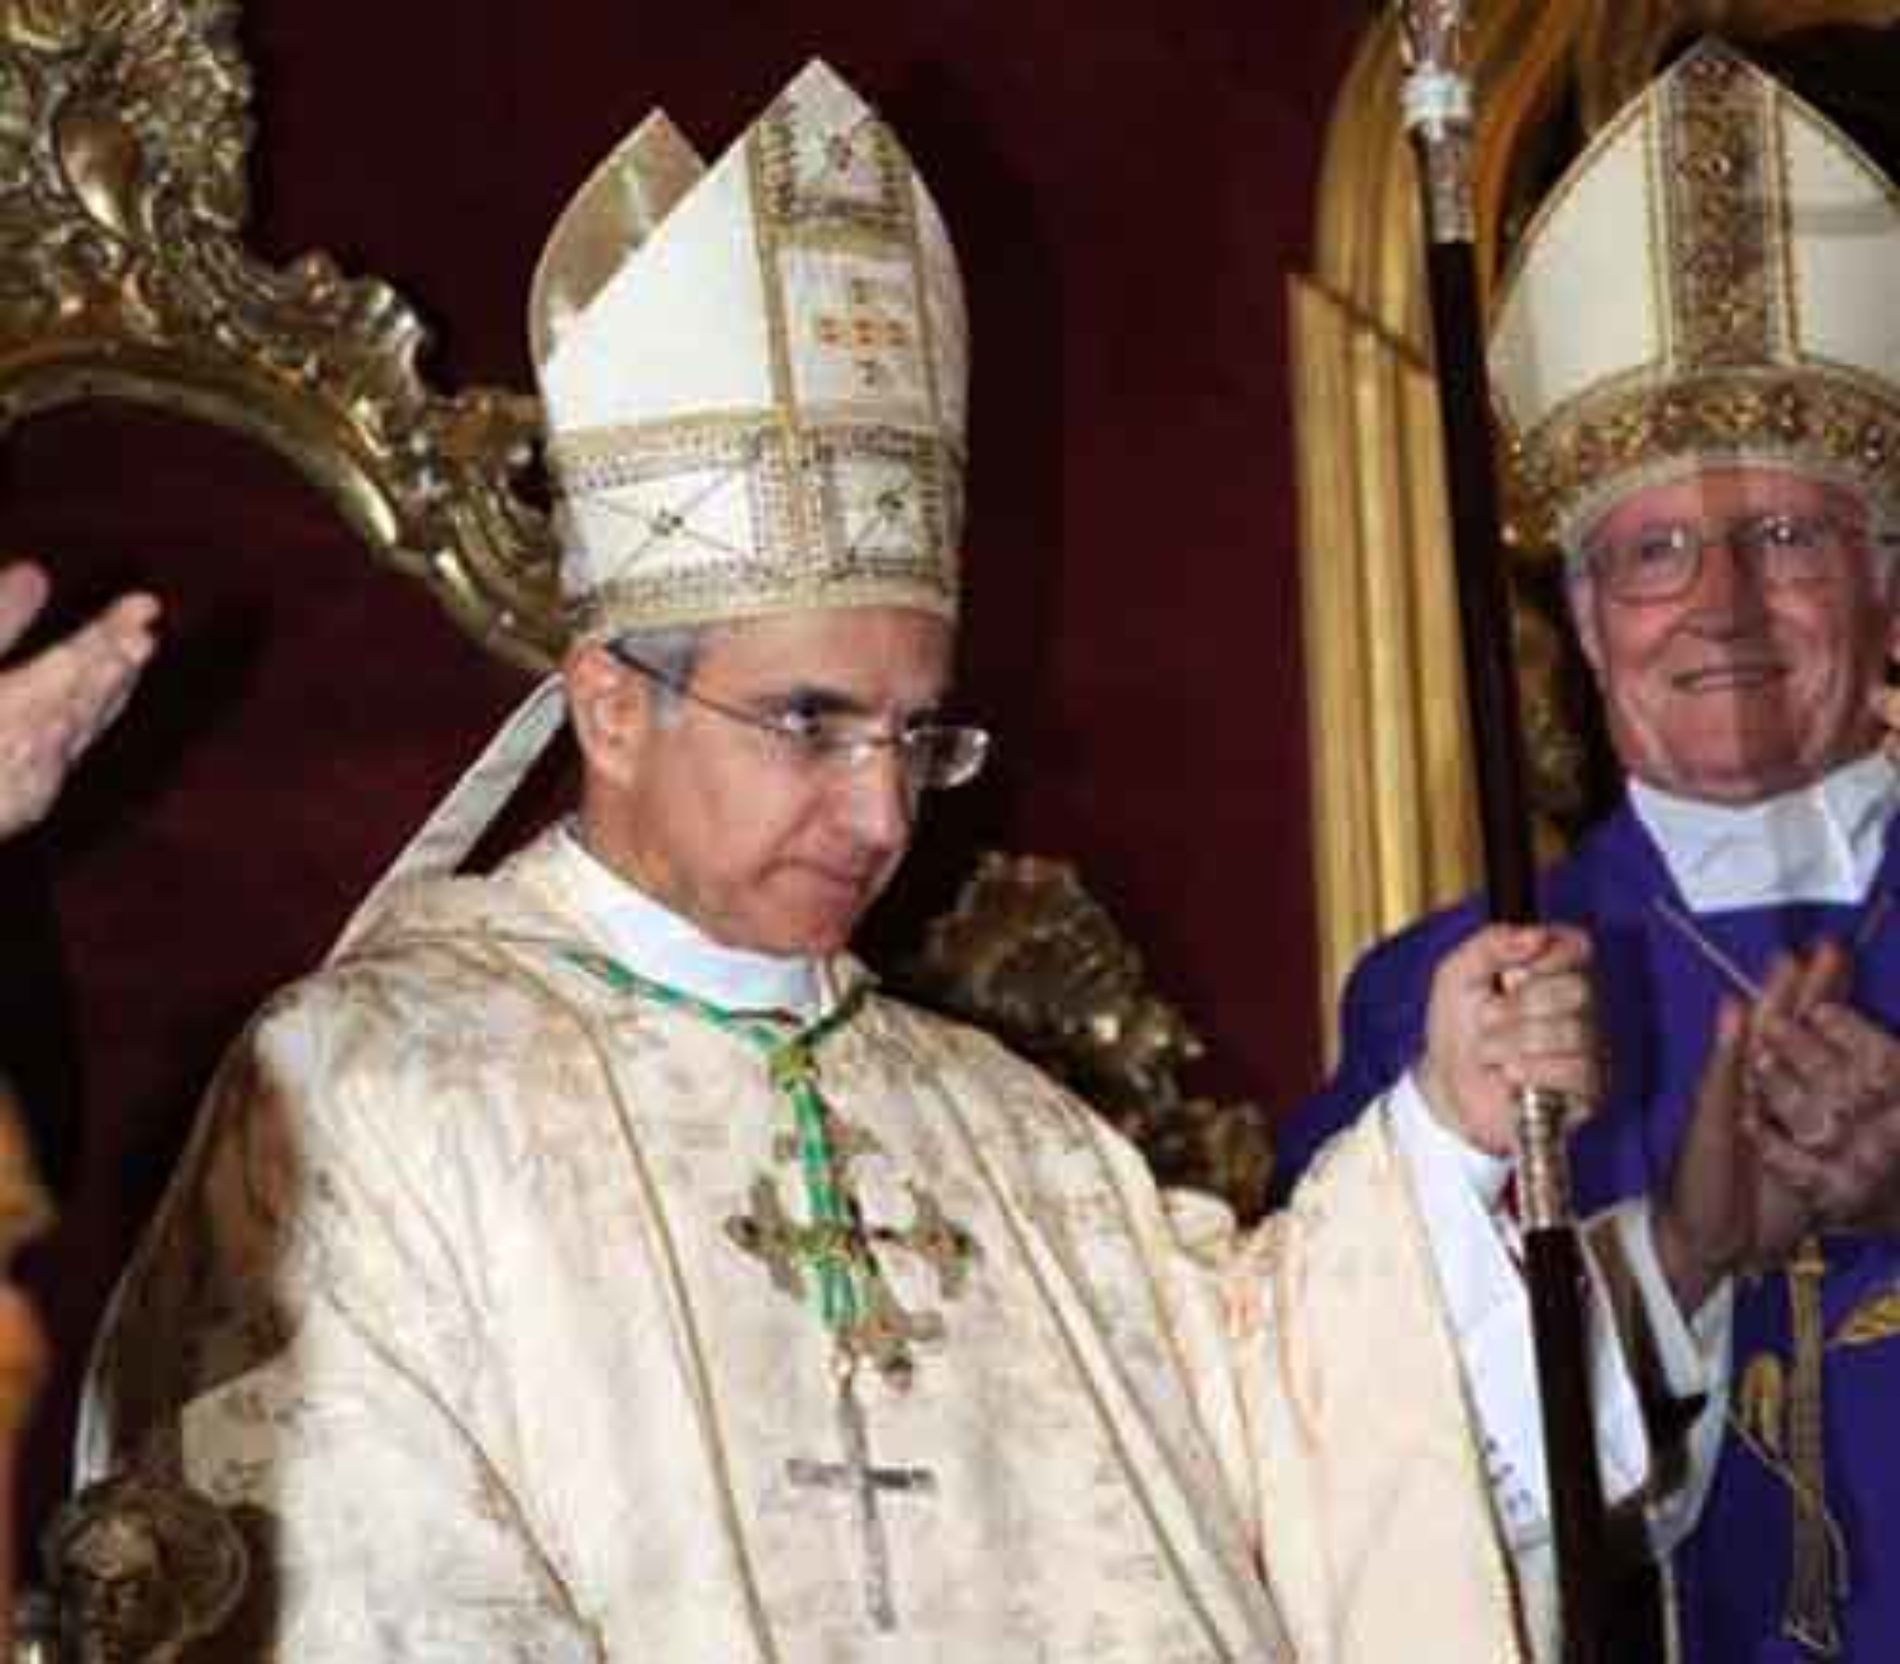 Il vescovo e il clero barrese si pronunciano sull’evento degli “Arcangeli”